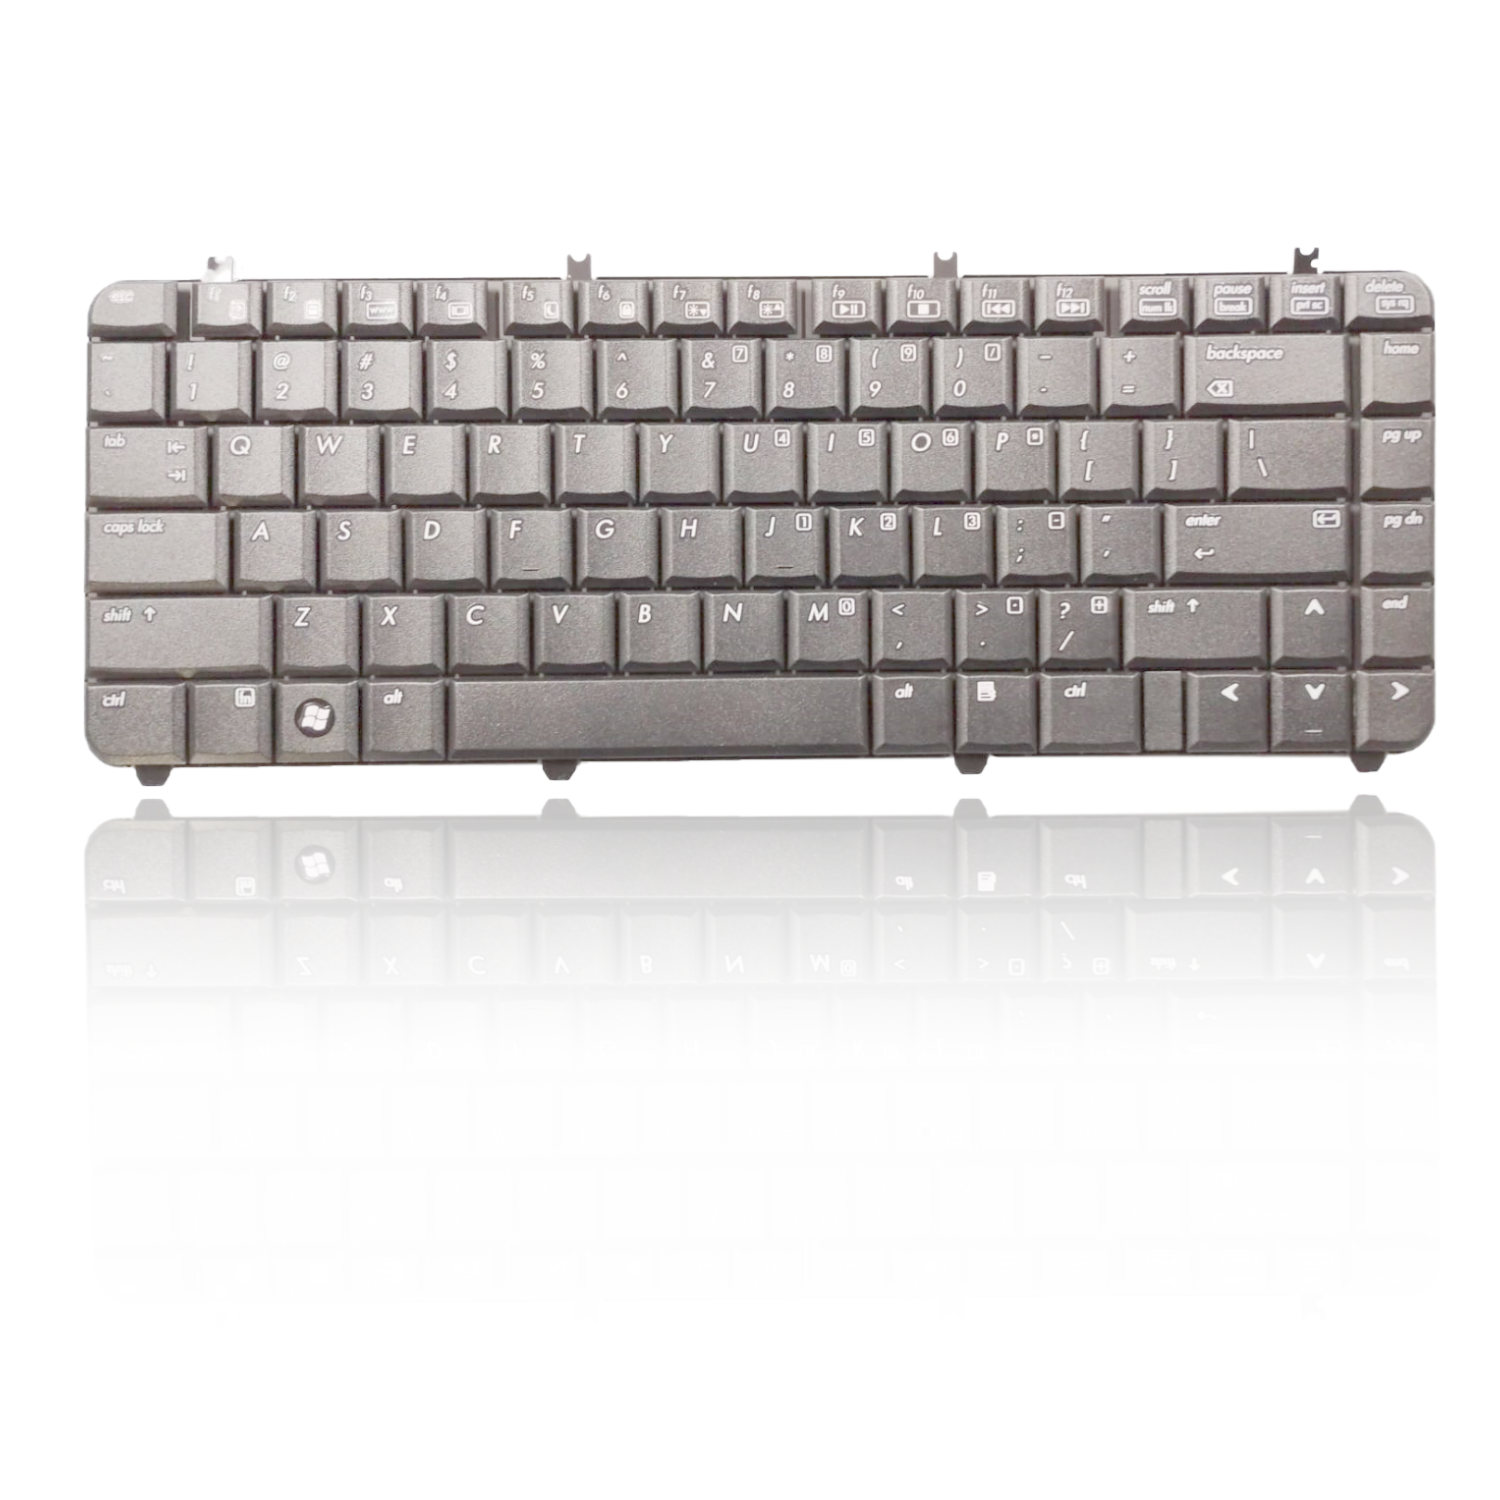 14-Inch Black HP Keyboard Compatible with HP Pavilion DV5, DV5Z, DV5 1000, DV5 1301, DV5 1100 Series